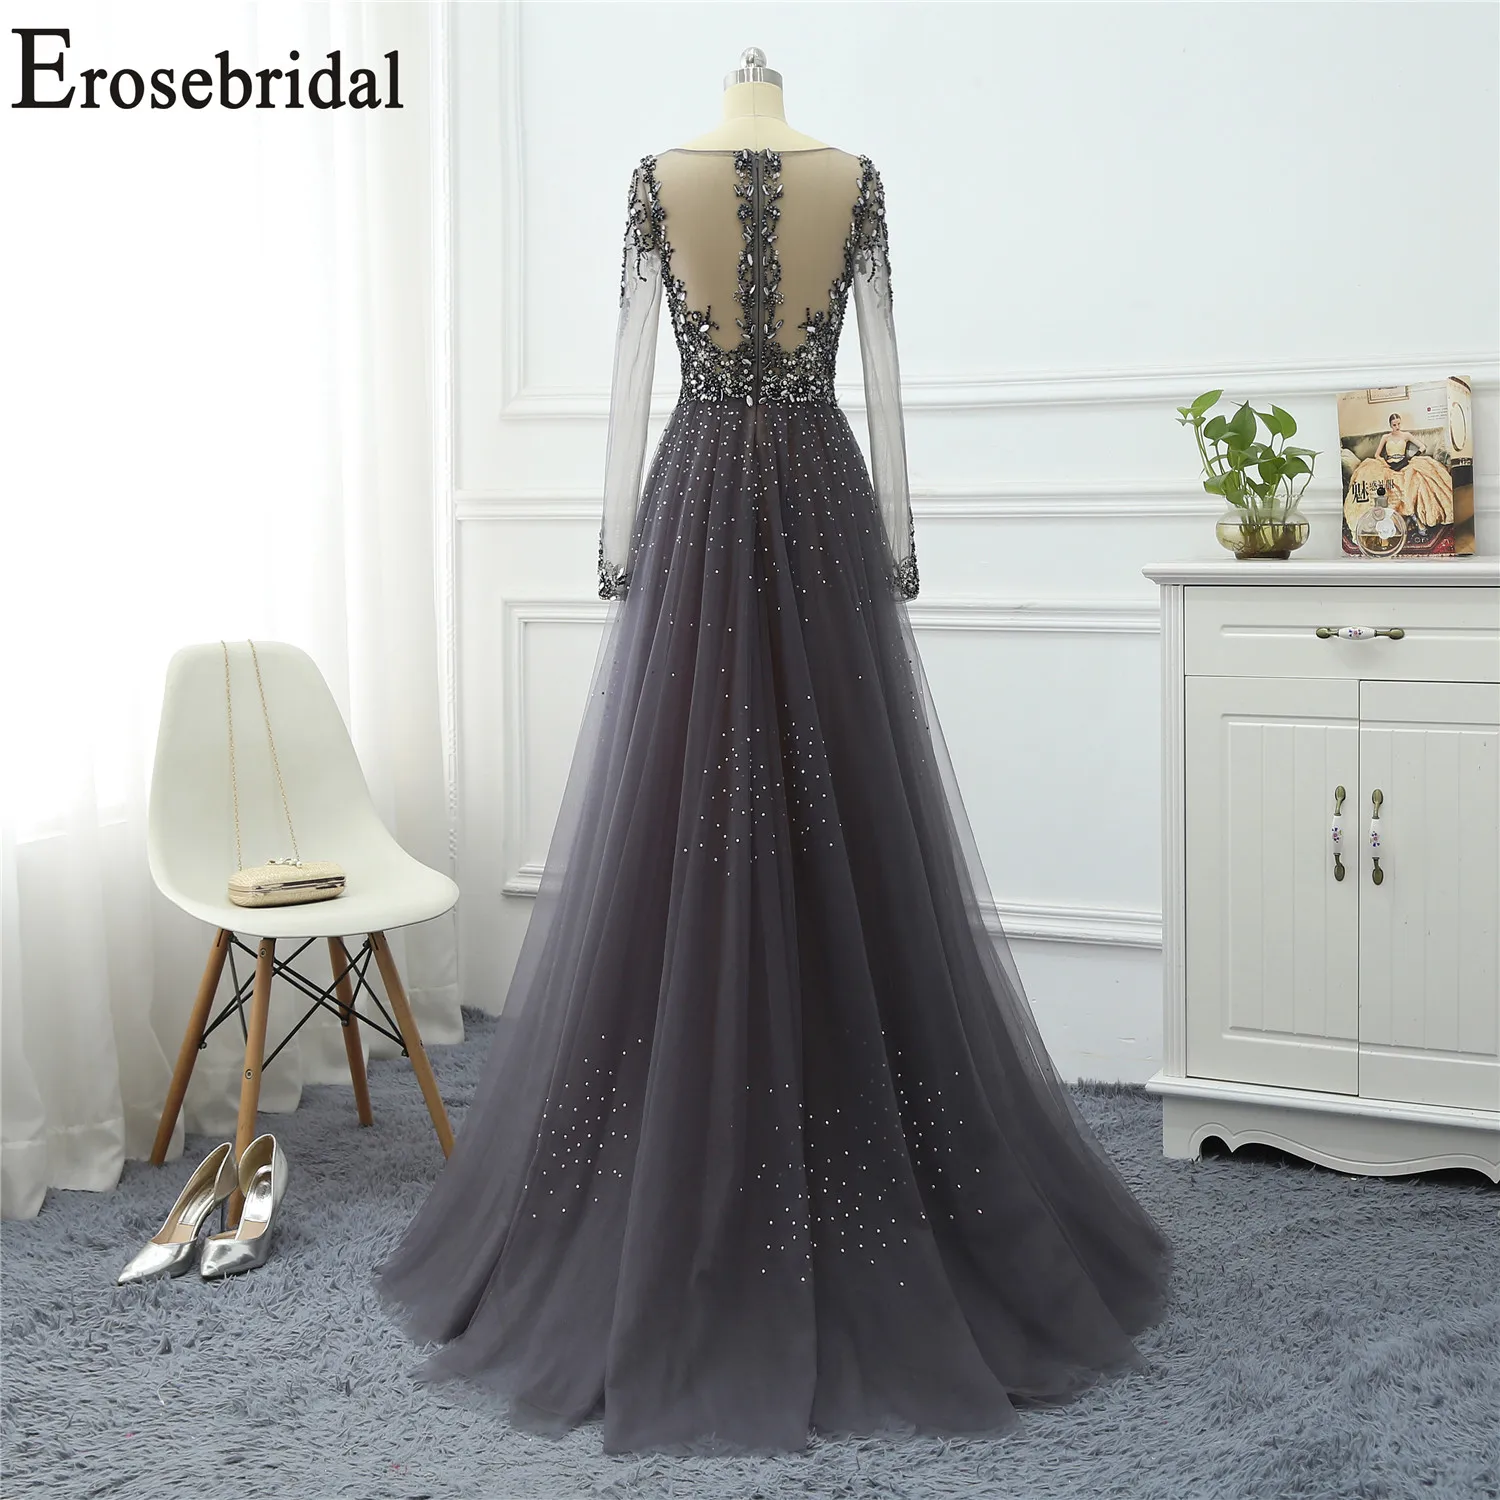 Erosebridal, вечернее платье с длинным рукавом,, элегантные вечерние платья, роскошное, украшенное бисером, с вырезом, с лифом, дизайнерское платье, вечерние платья